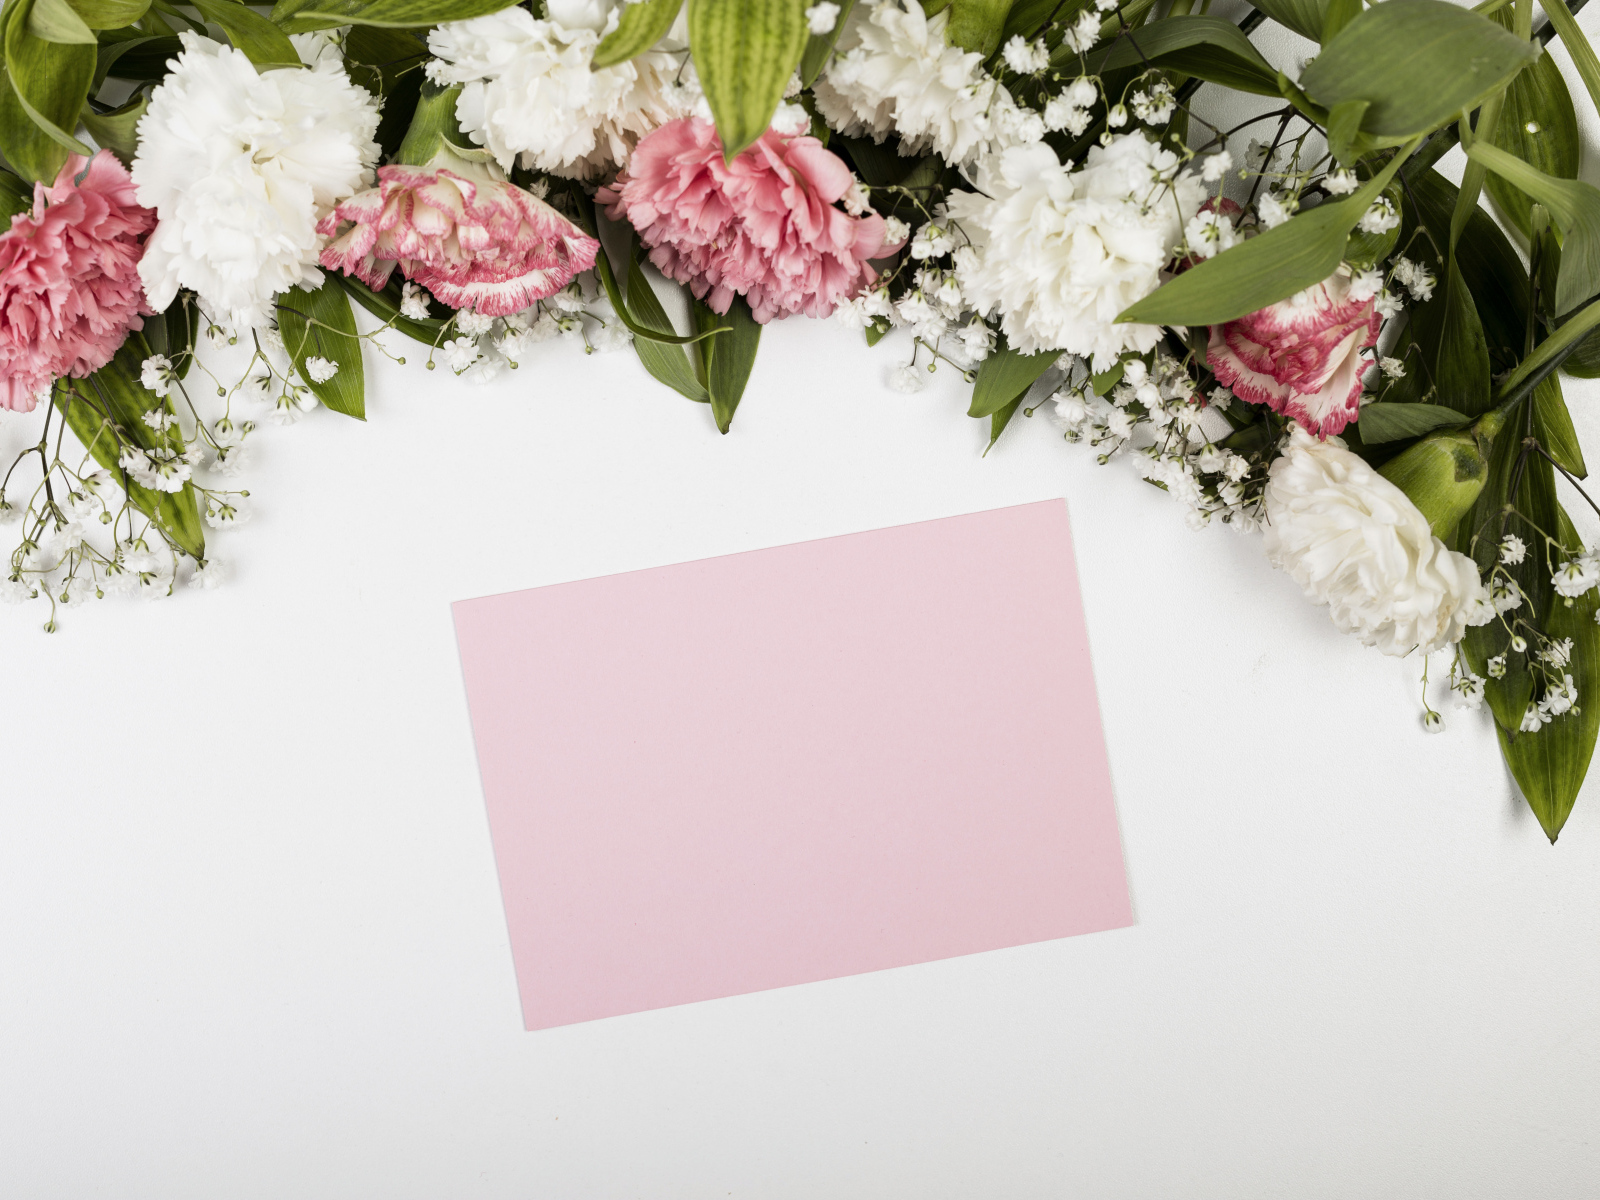 Лист бумаги с цветами гвоздики на сером фоне, шаблон для открытки